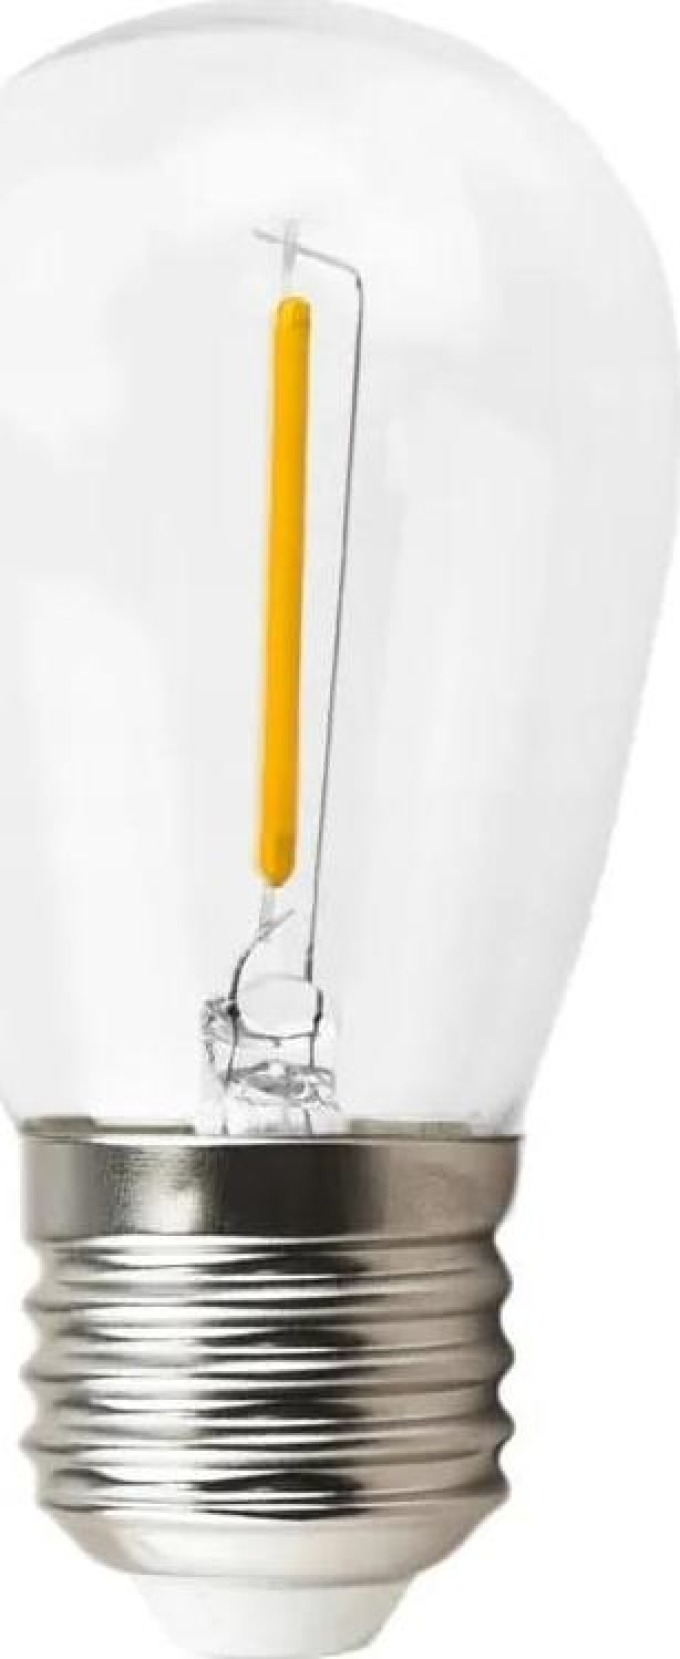 LED žárovka s filamentem - E27 - 1W - teplá bílá, ideální pro girlandy, nabízí úsporu energie, dlouhou životnost a žádné škodlivé záření